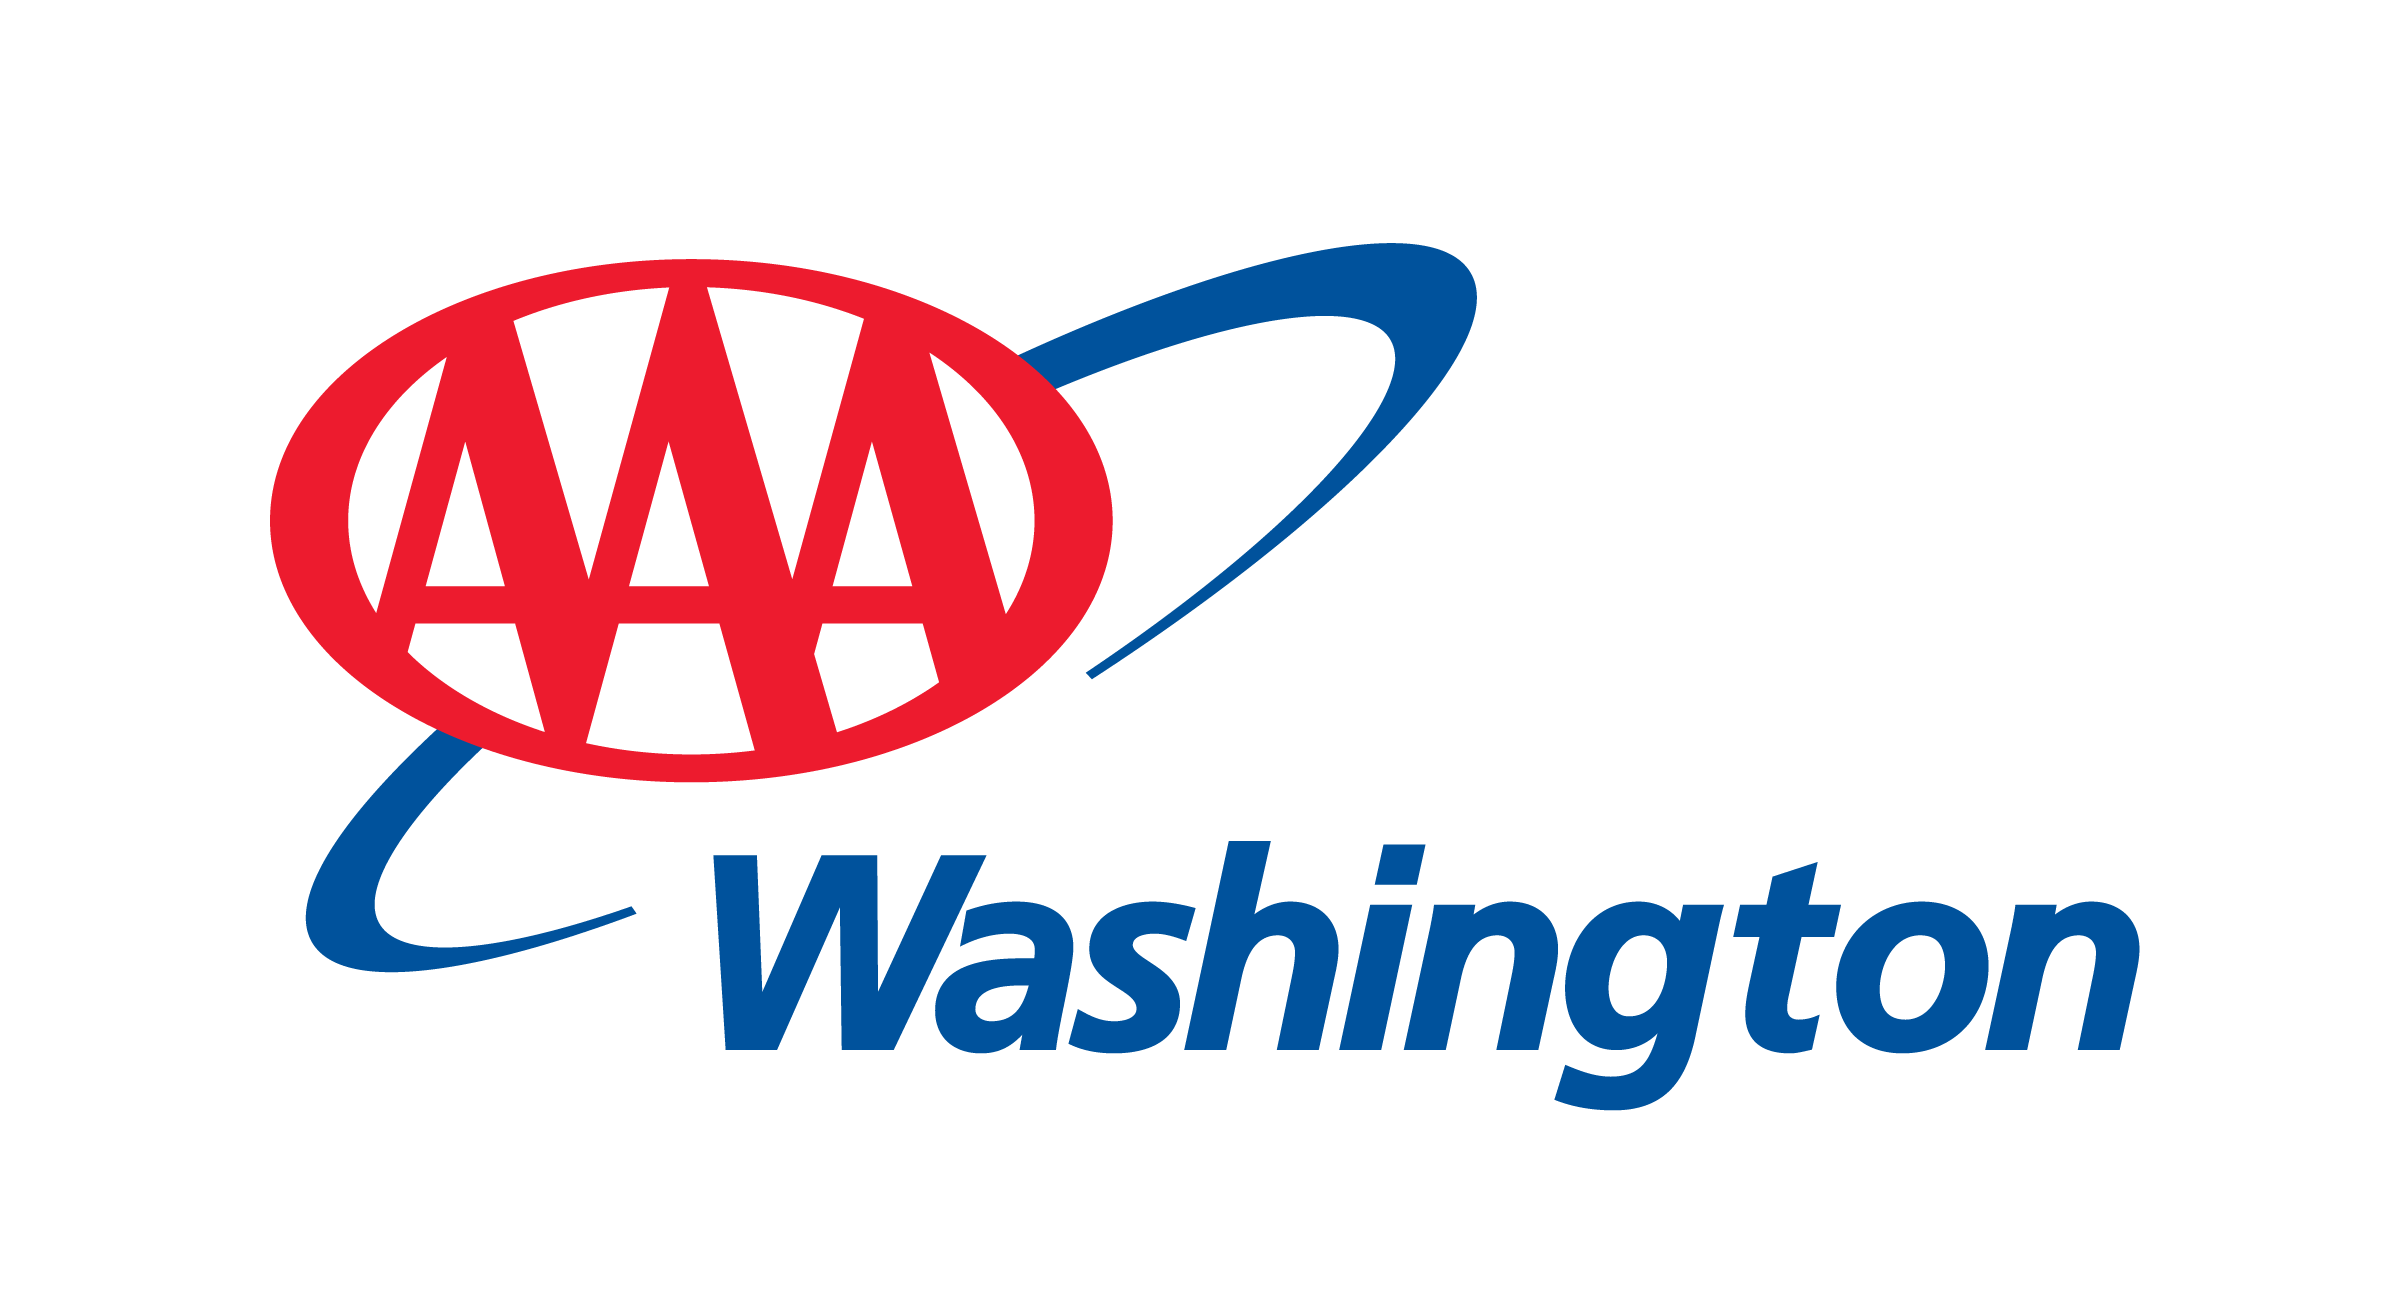 AAA Washington Logo